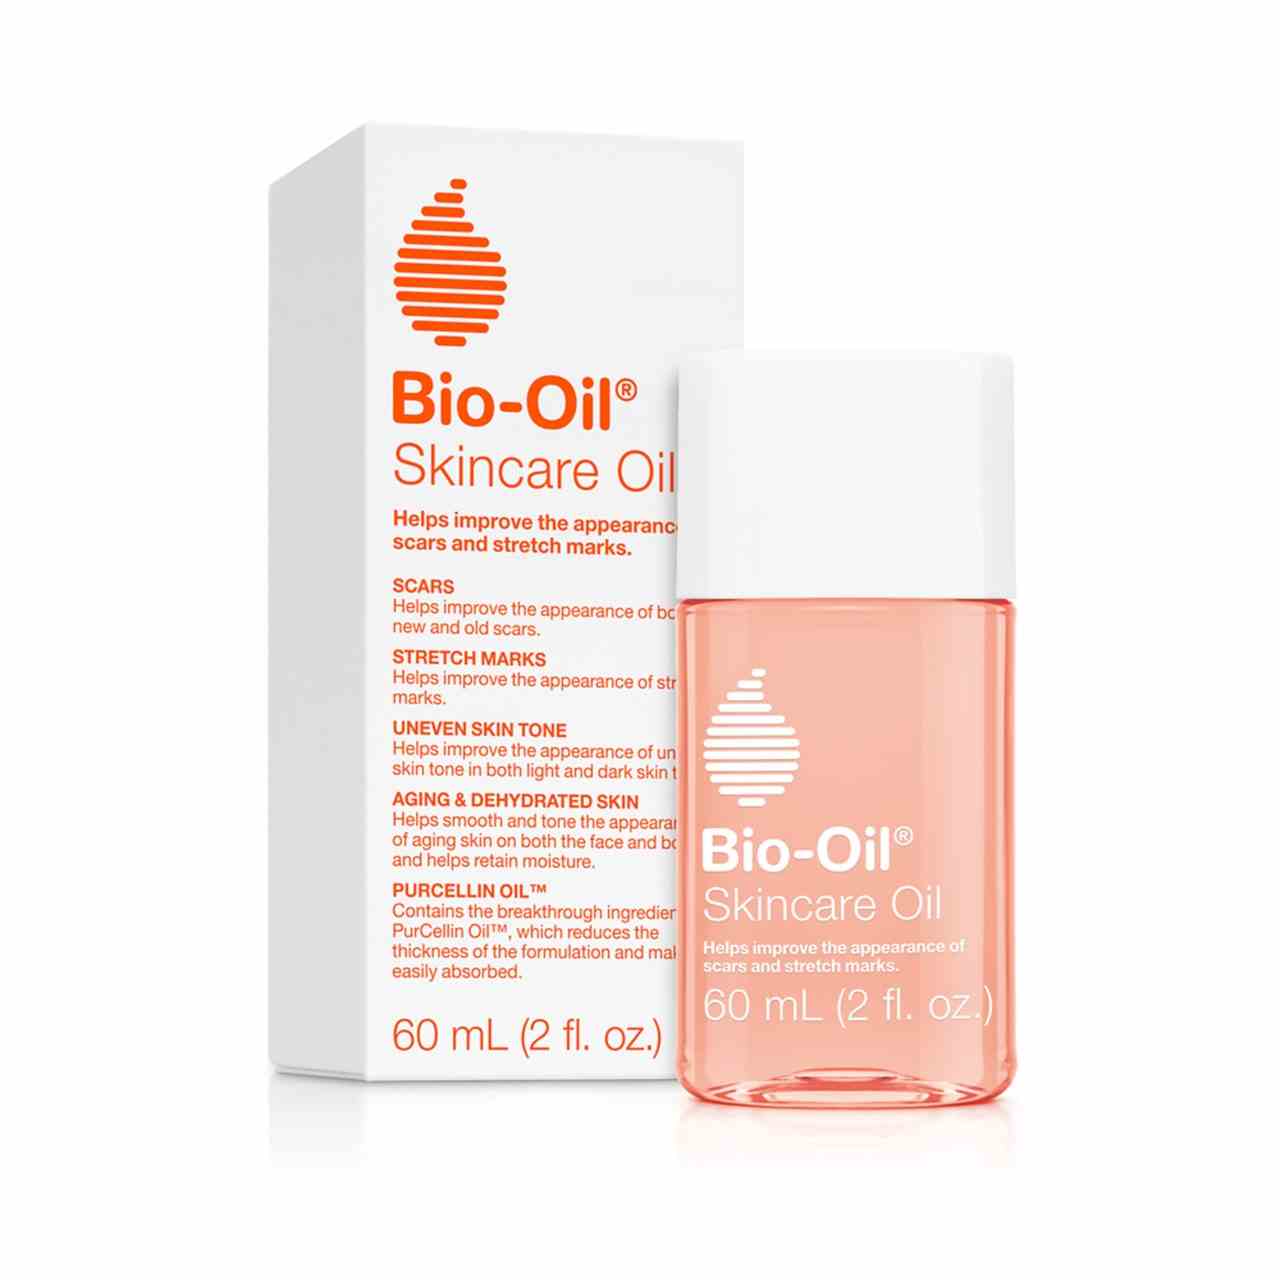 Eine durchsichtige pfirsichfarbene Flasche mit weißem Verschluss und Text mit der Aufschrift "Bi-Oil Hautpflegeöl" mit passender Verpackungsbox auf weißem Hintergrund.